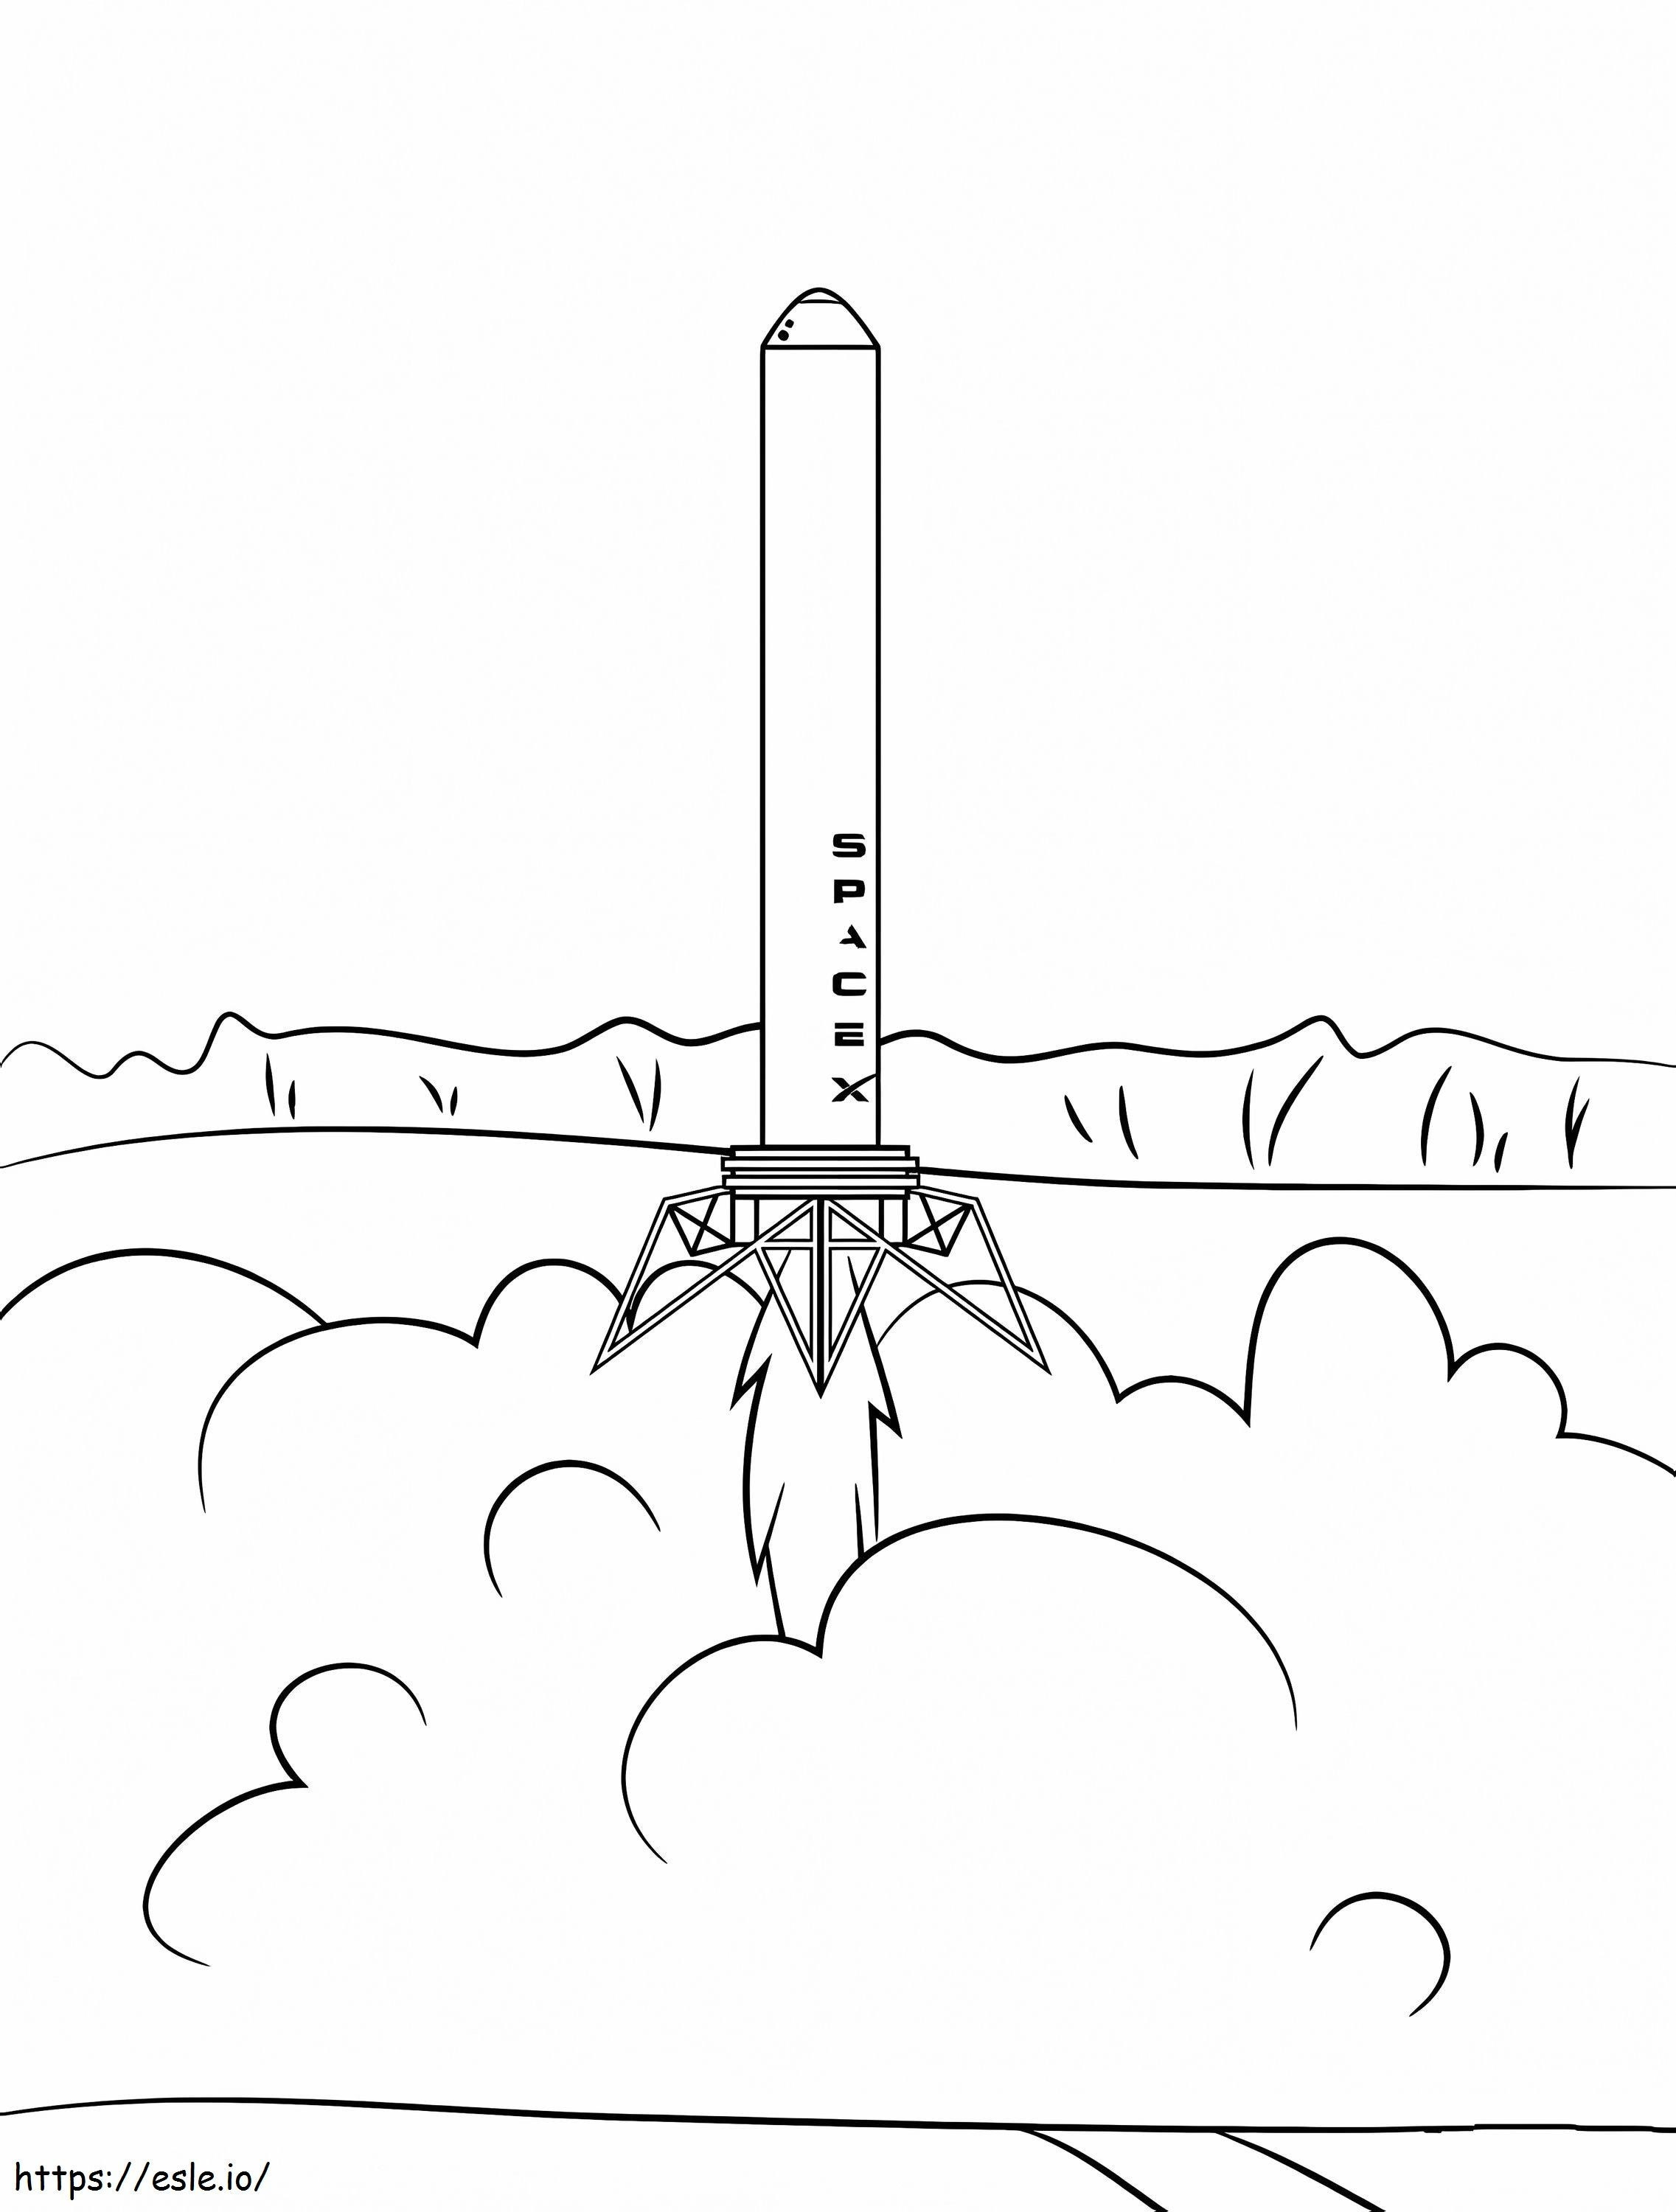 Coloriage Spacex Falcon 9 à imprimer dessin